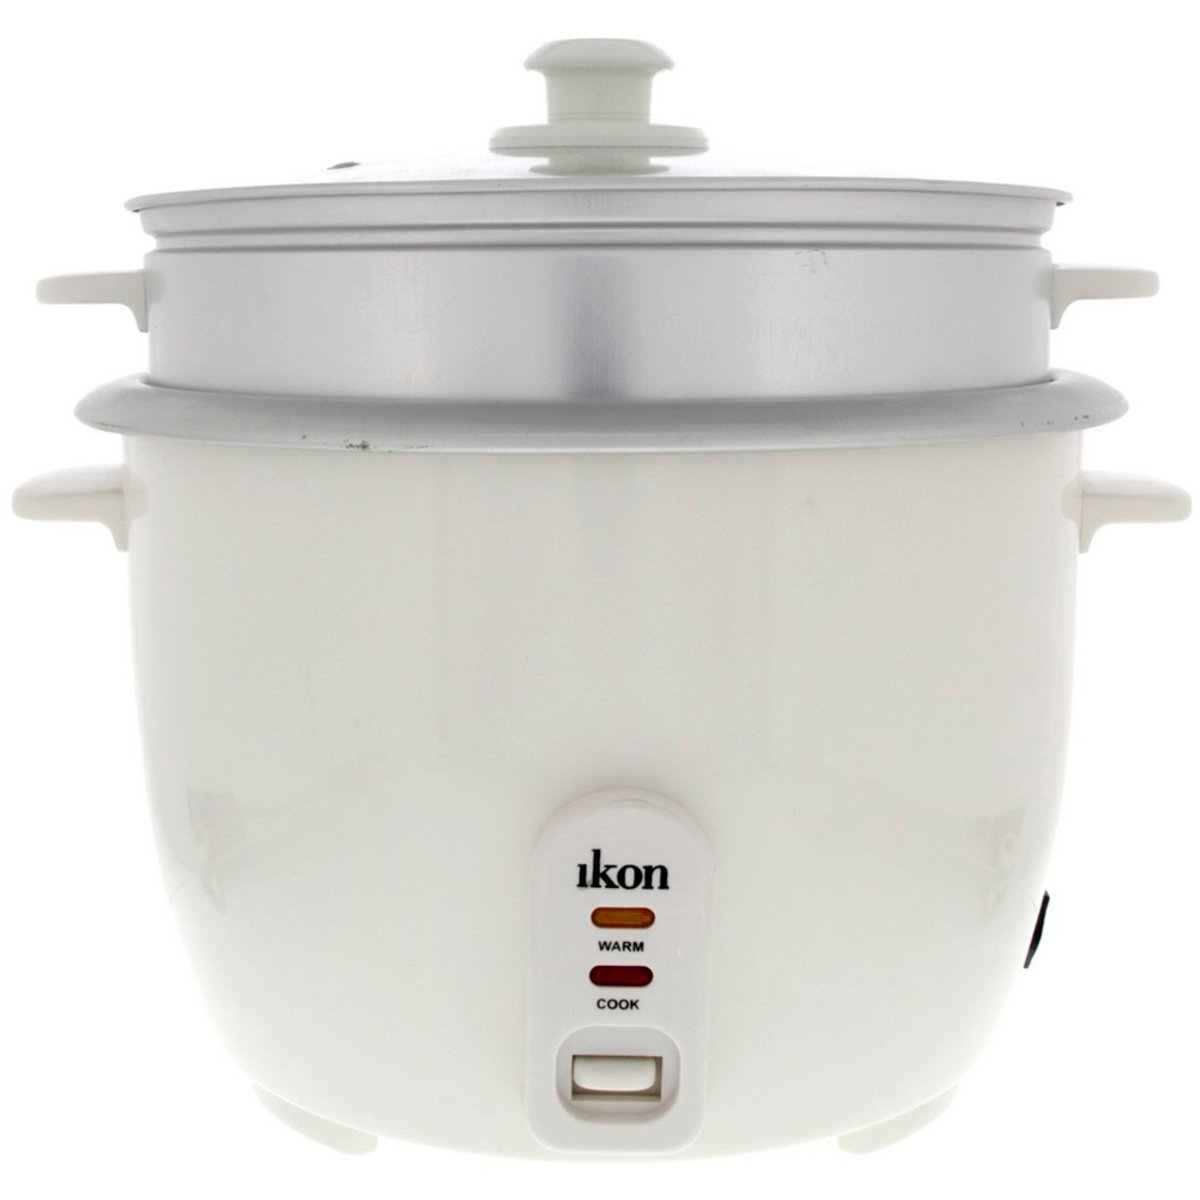 اشتري قم بشراء ايكون قدر طبخ كهربائي 2.8 لتر IK60-982A Online at Best Price من الموقع - من لولو هايبر ماركت Rice Cookers في السعودية